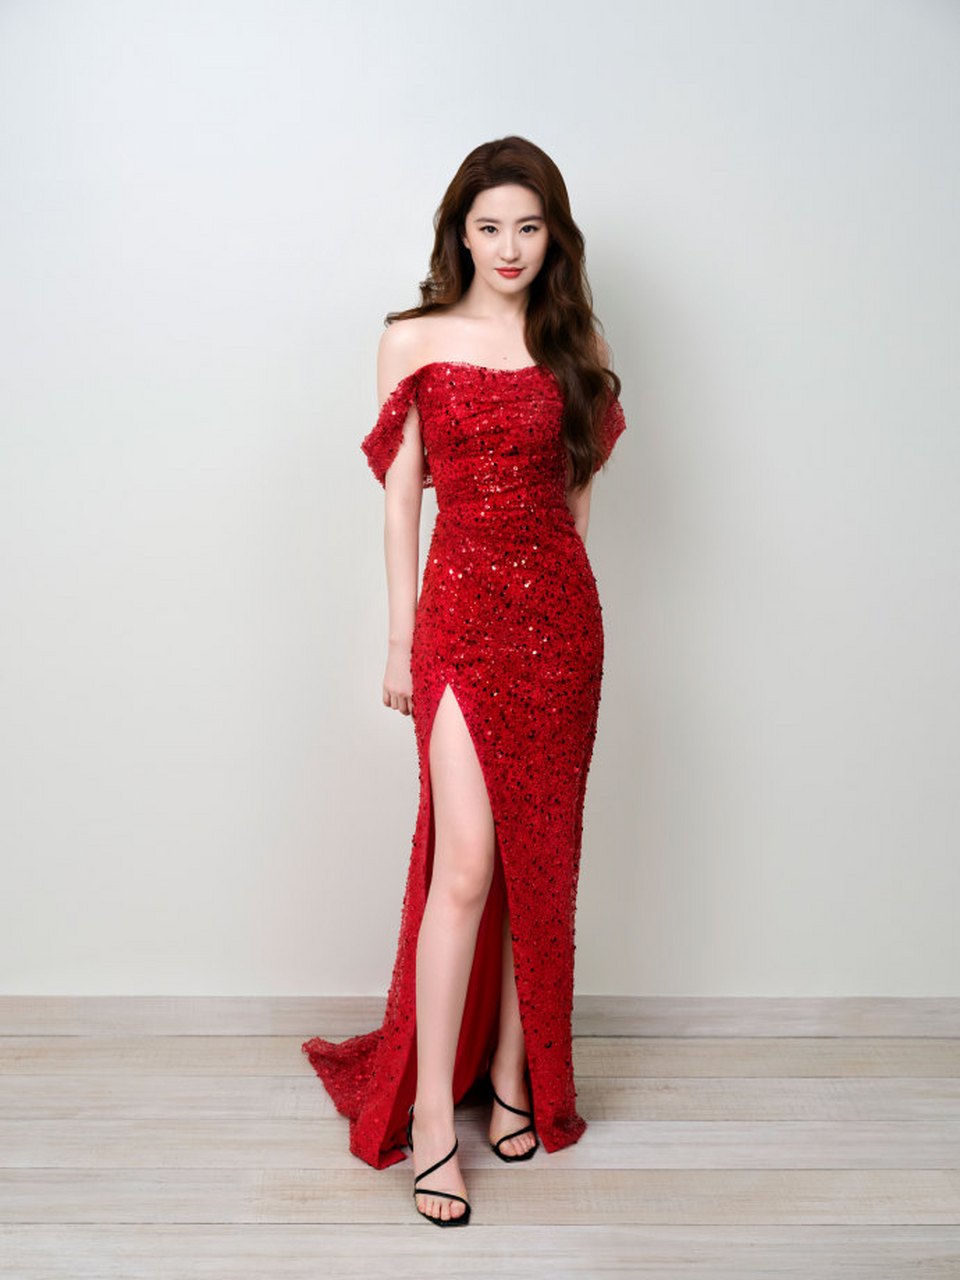 刘亦菲的这套红色抹胸礼服,再搭配上红色高跟鞋,会不会更有感觉?